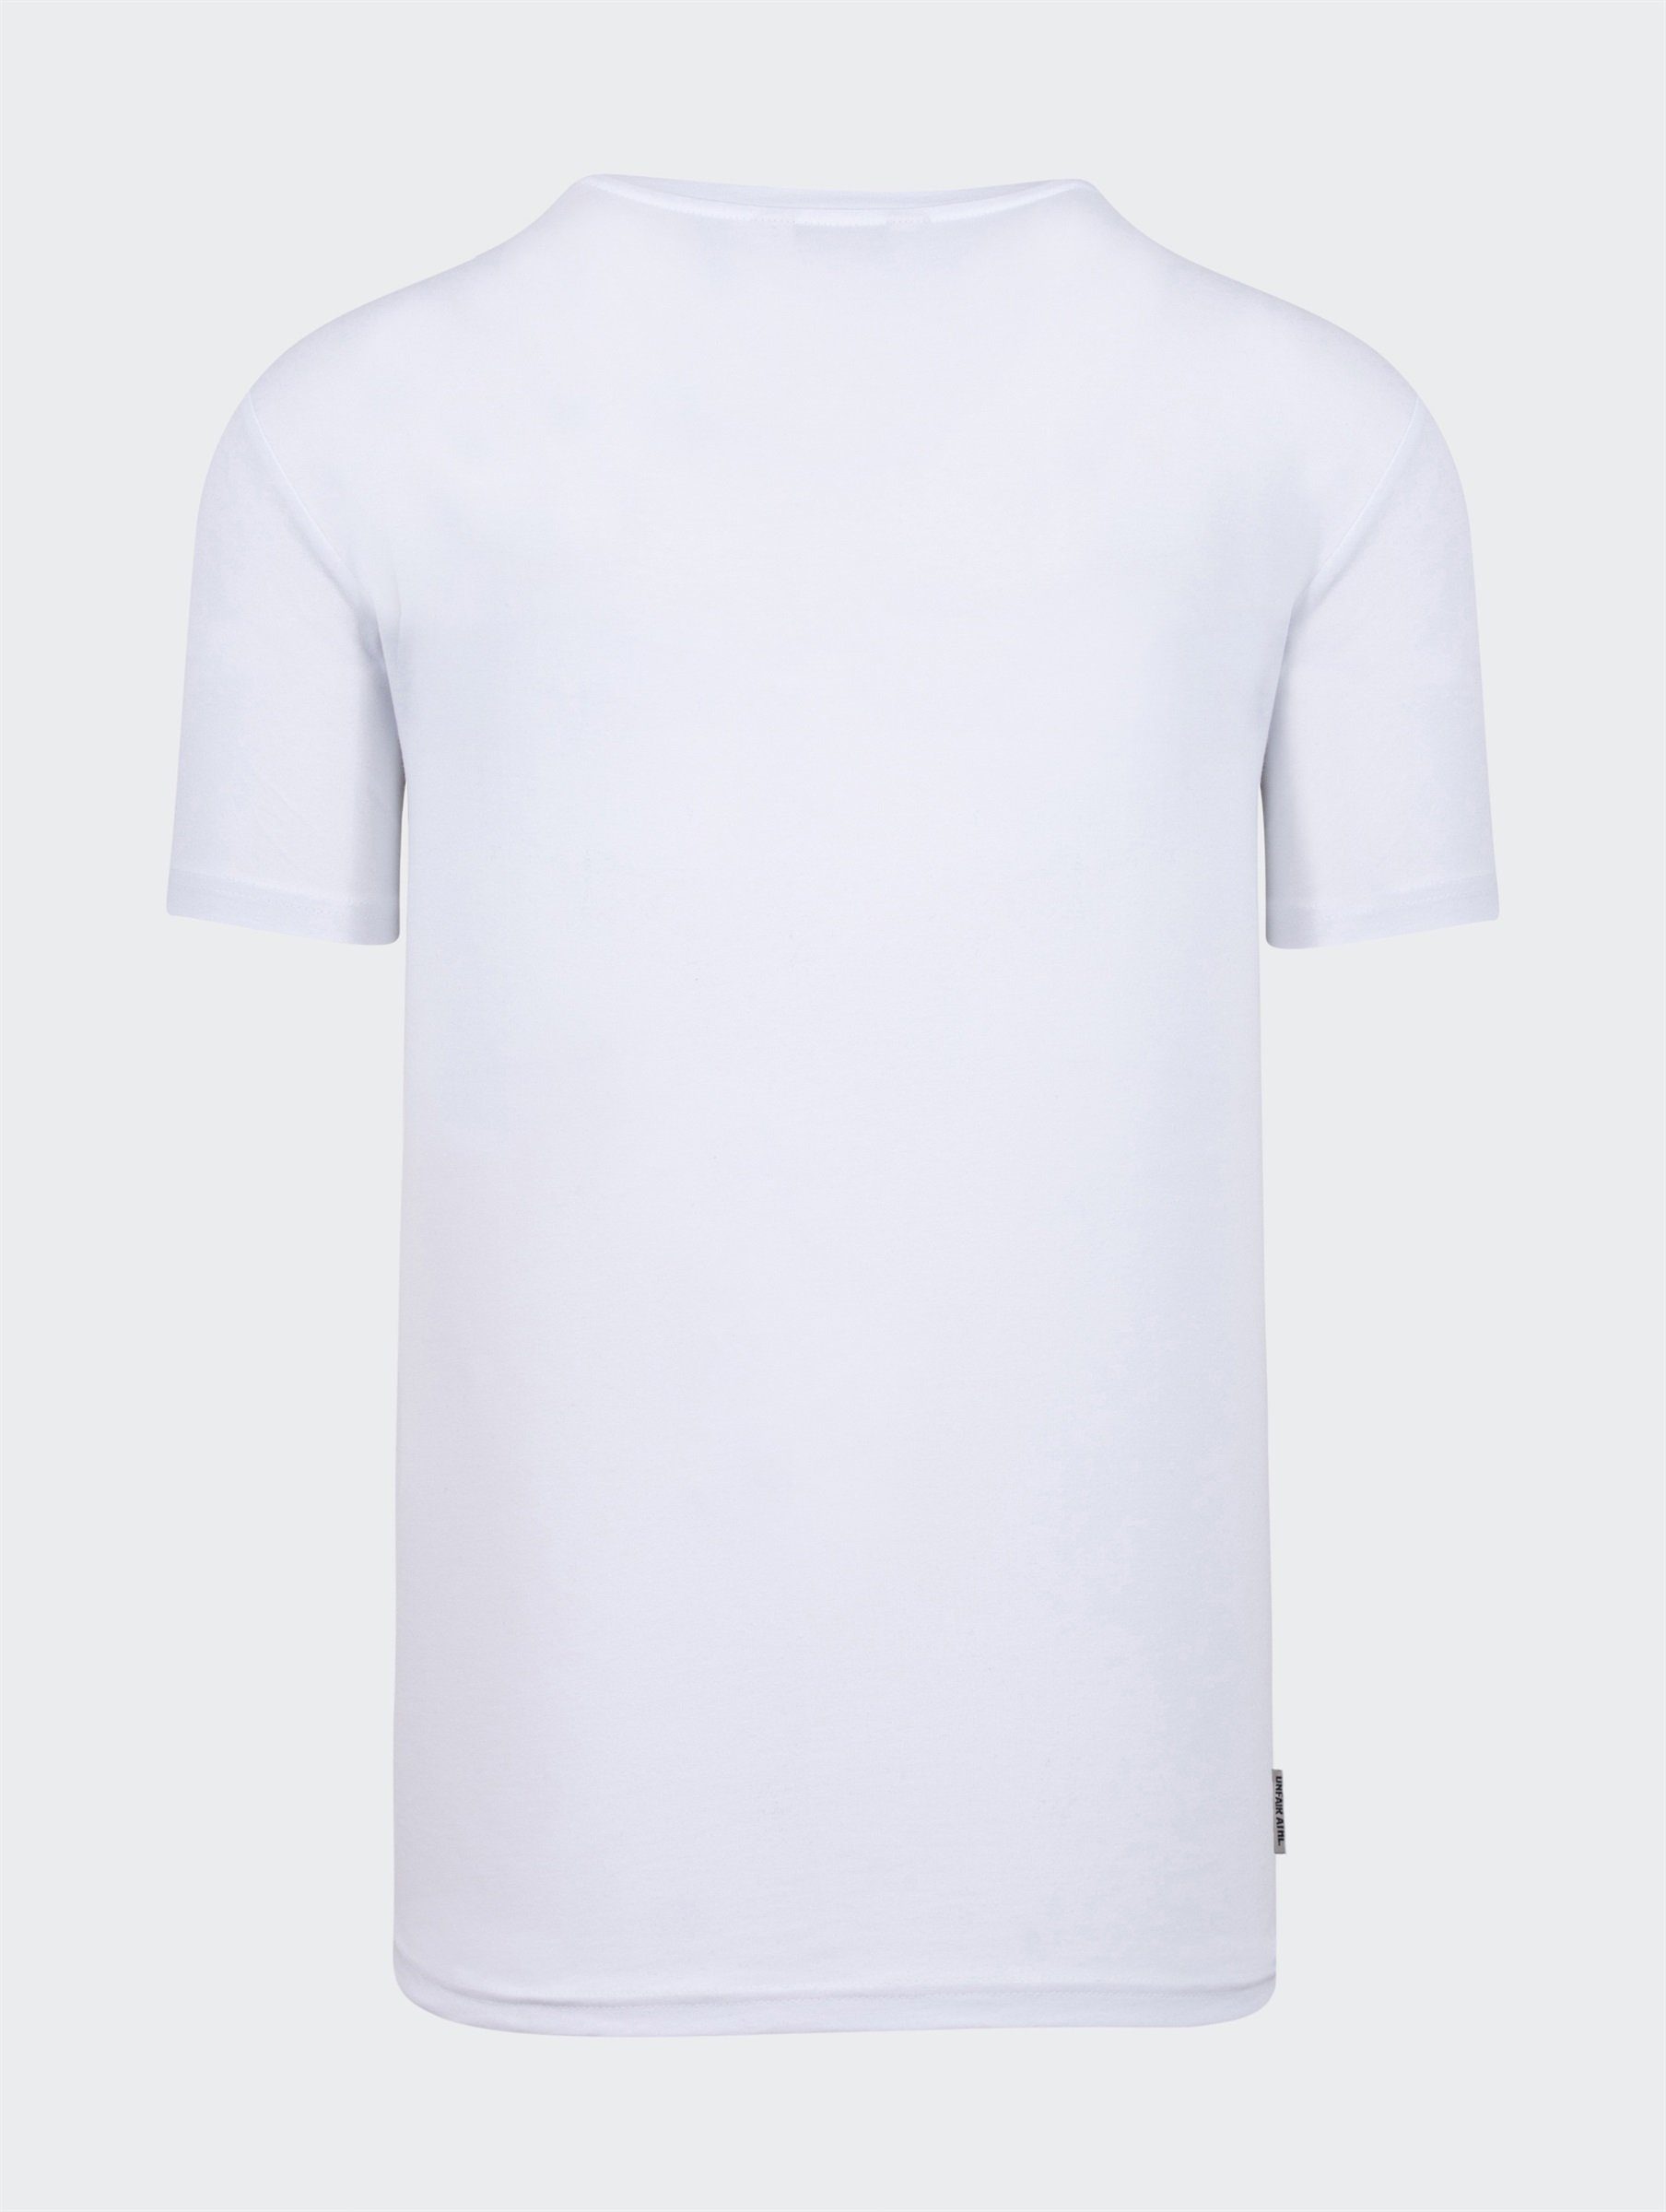 Classic Unfair white T-Shirt Athletics Label T-Shirt Adult Athletics 2021 Herren Unfair